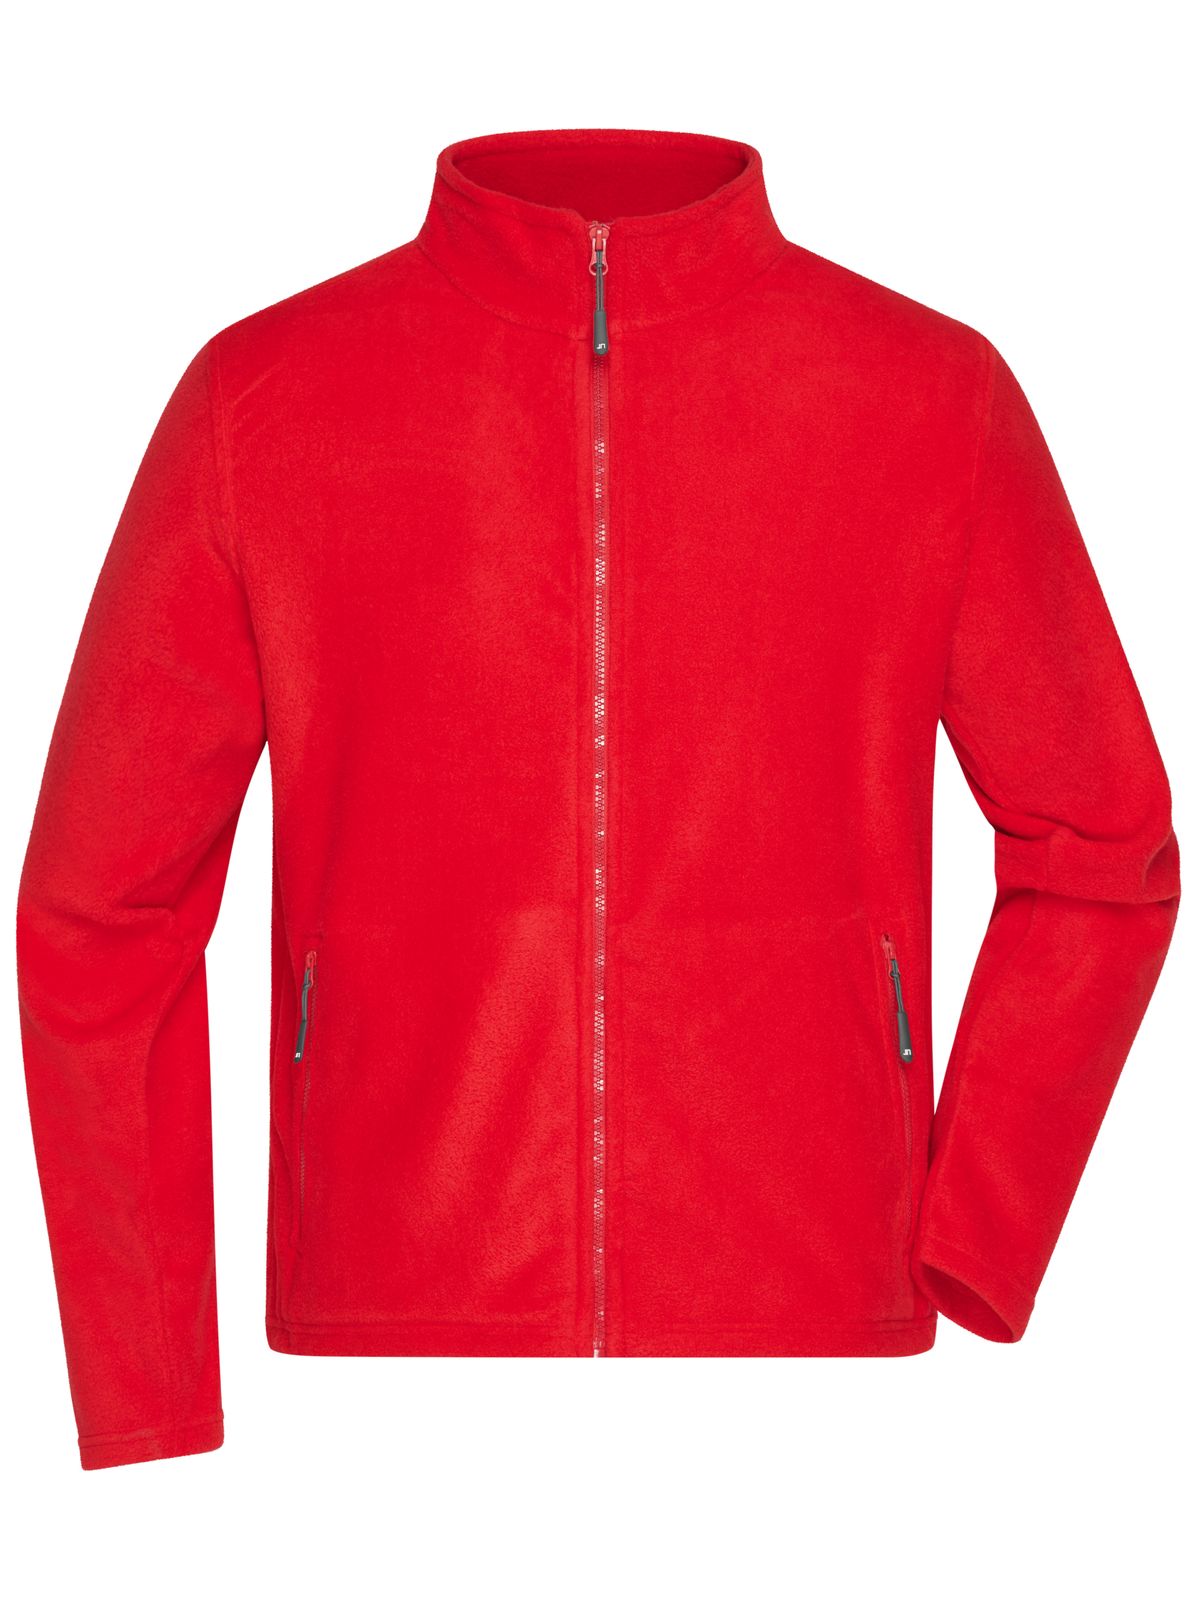 mens-fleece-jacket-red.webp